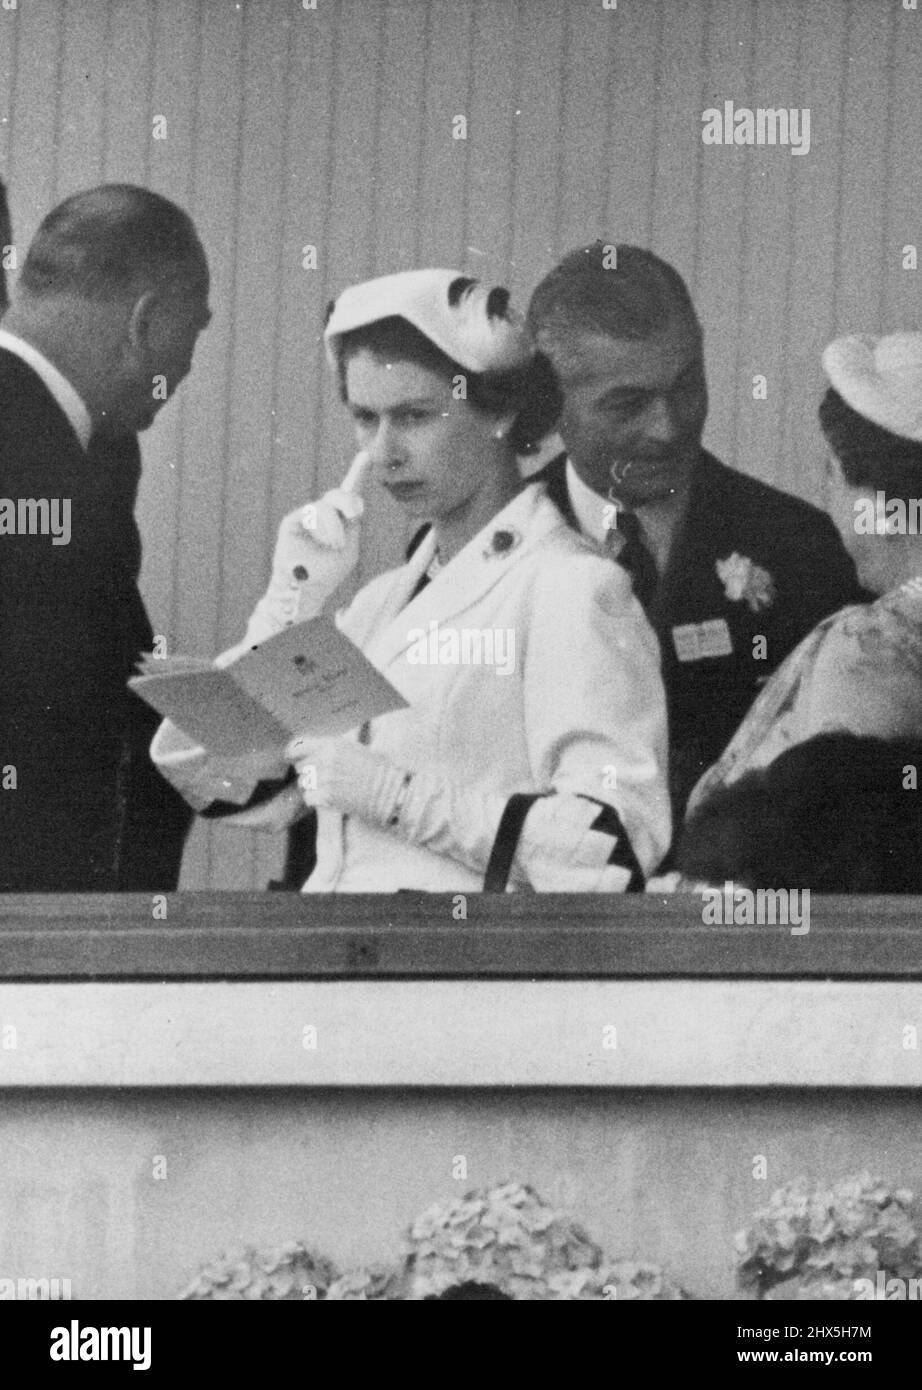 Die Königin in nachdenklicher Stimmung bei Ascot. Ihre Majestät, die Königin, legt ihren Finger nachdenklich auf ihre Wange, während sie heute ihre Rennkarte in der Royal Box in Ascot studiert. Ihre Majestät war heute weiß gekleidet. 18. Juni 1953. (Foto von Fox Photos). Stockfoto